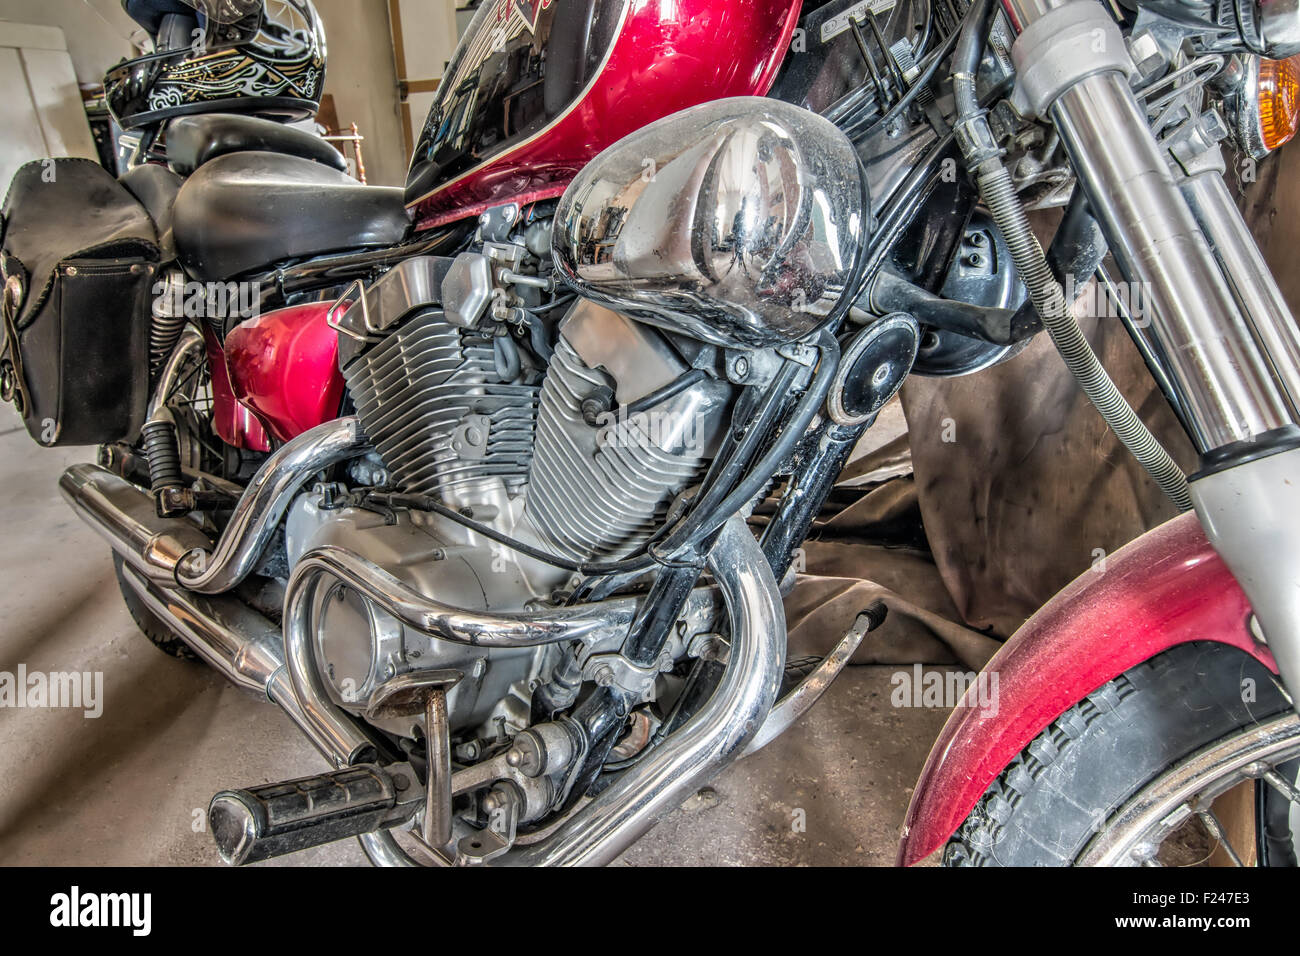 Engine of motorcycle - motorbike Stock Photo